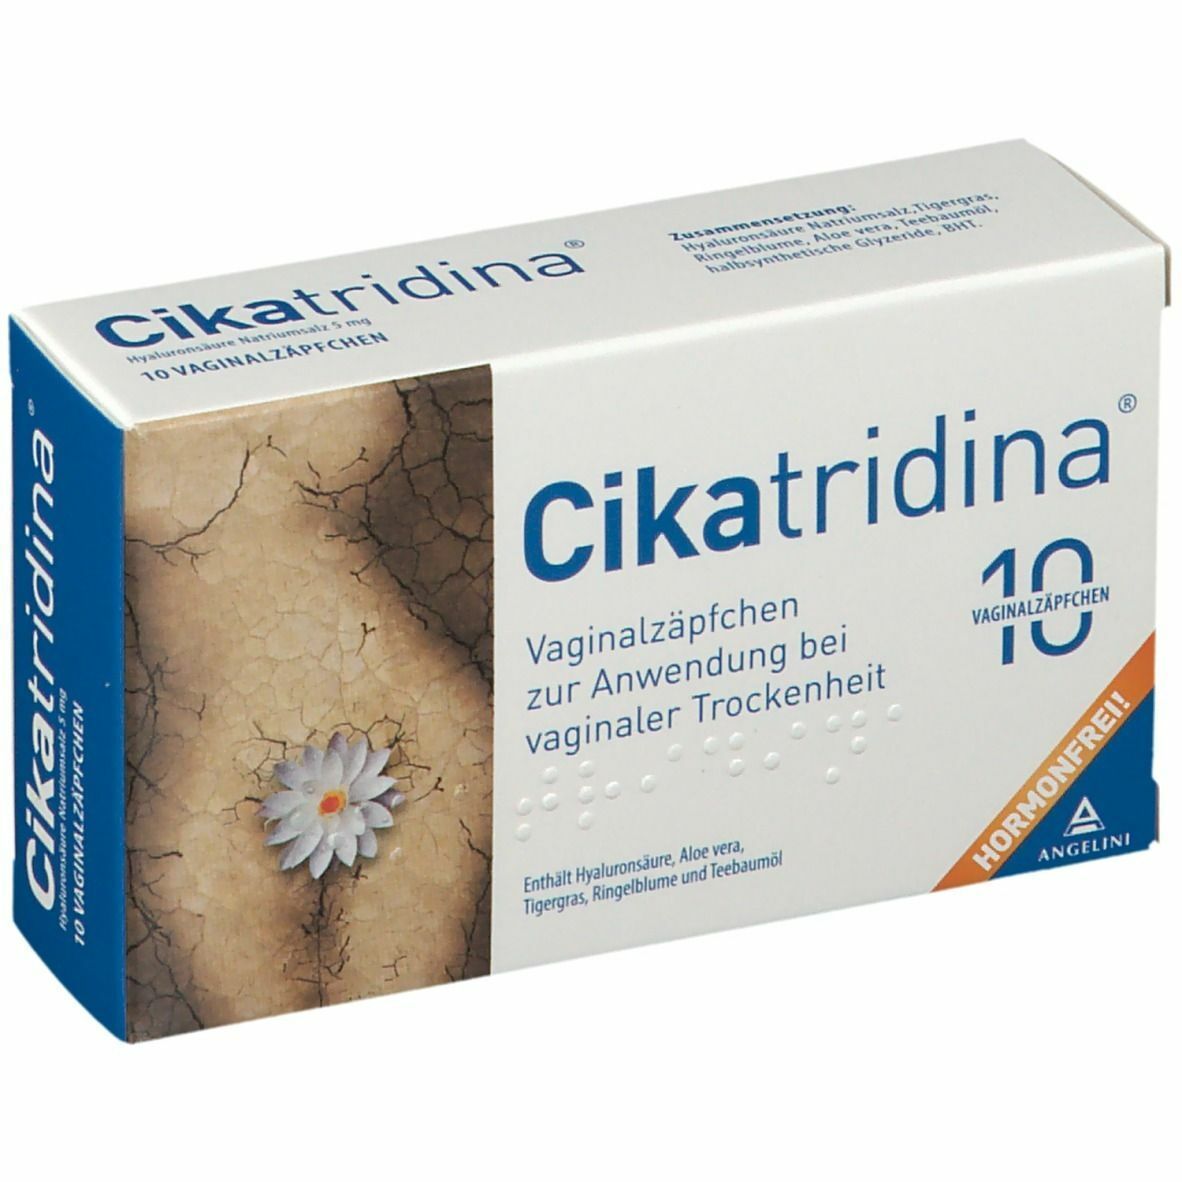 Cikatridina® Vaginalzäpfchen